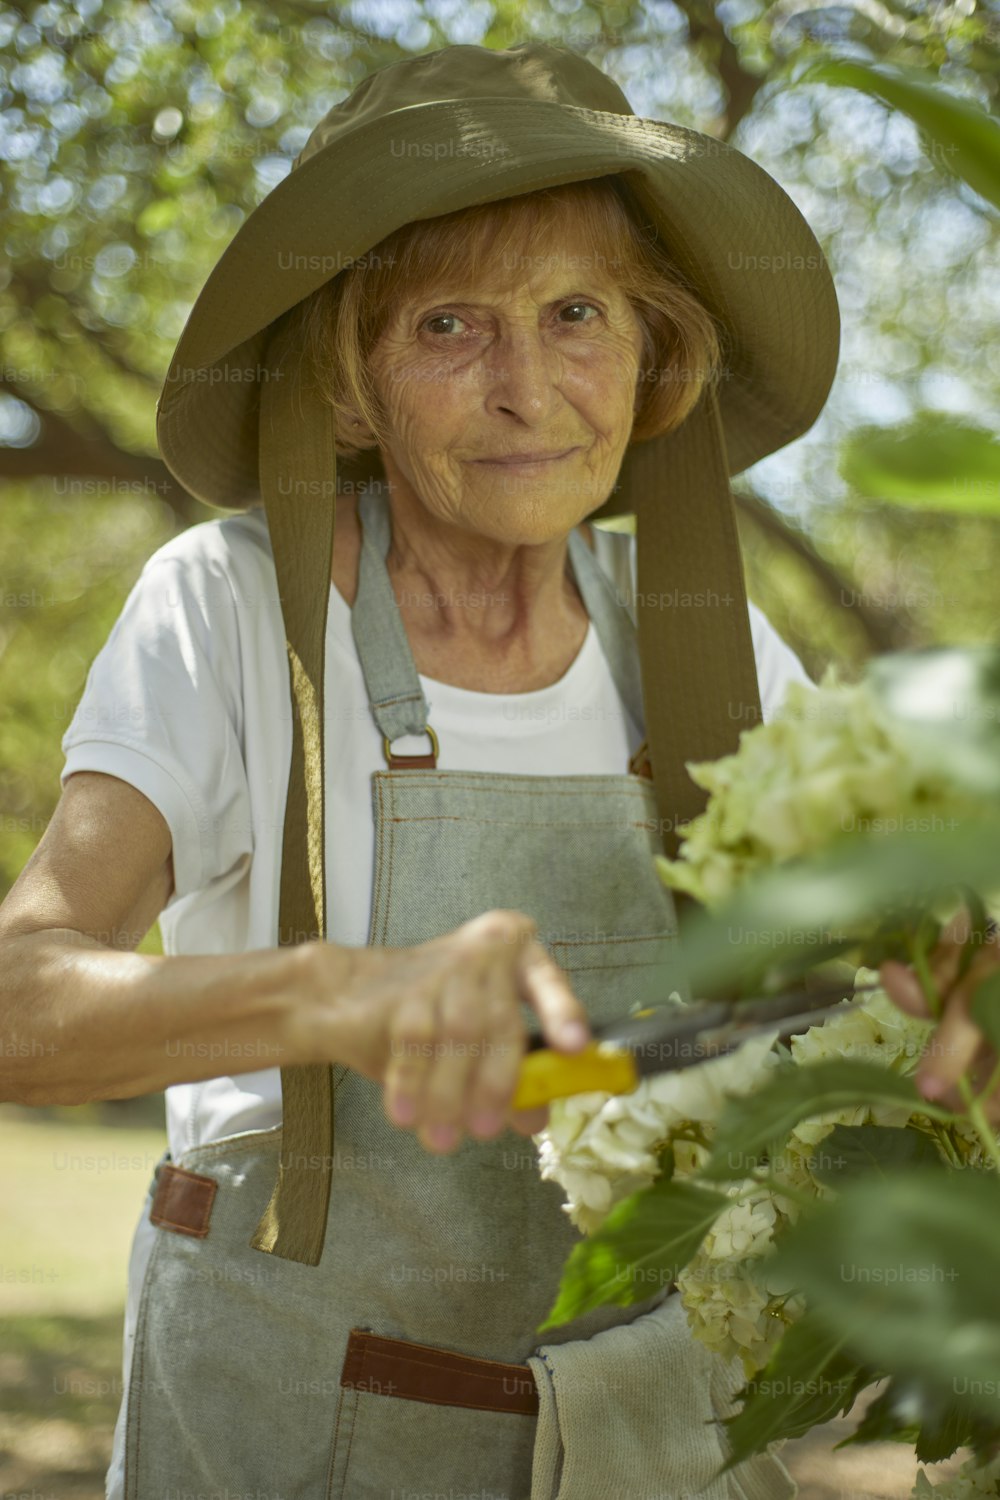 Una mujer con sombrero cortando flores con unas tijeras